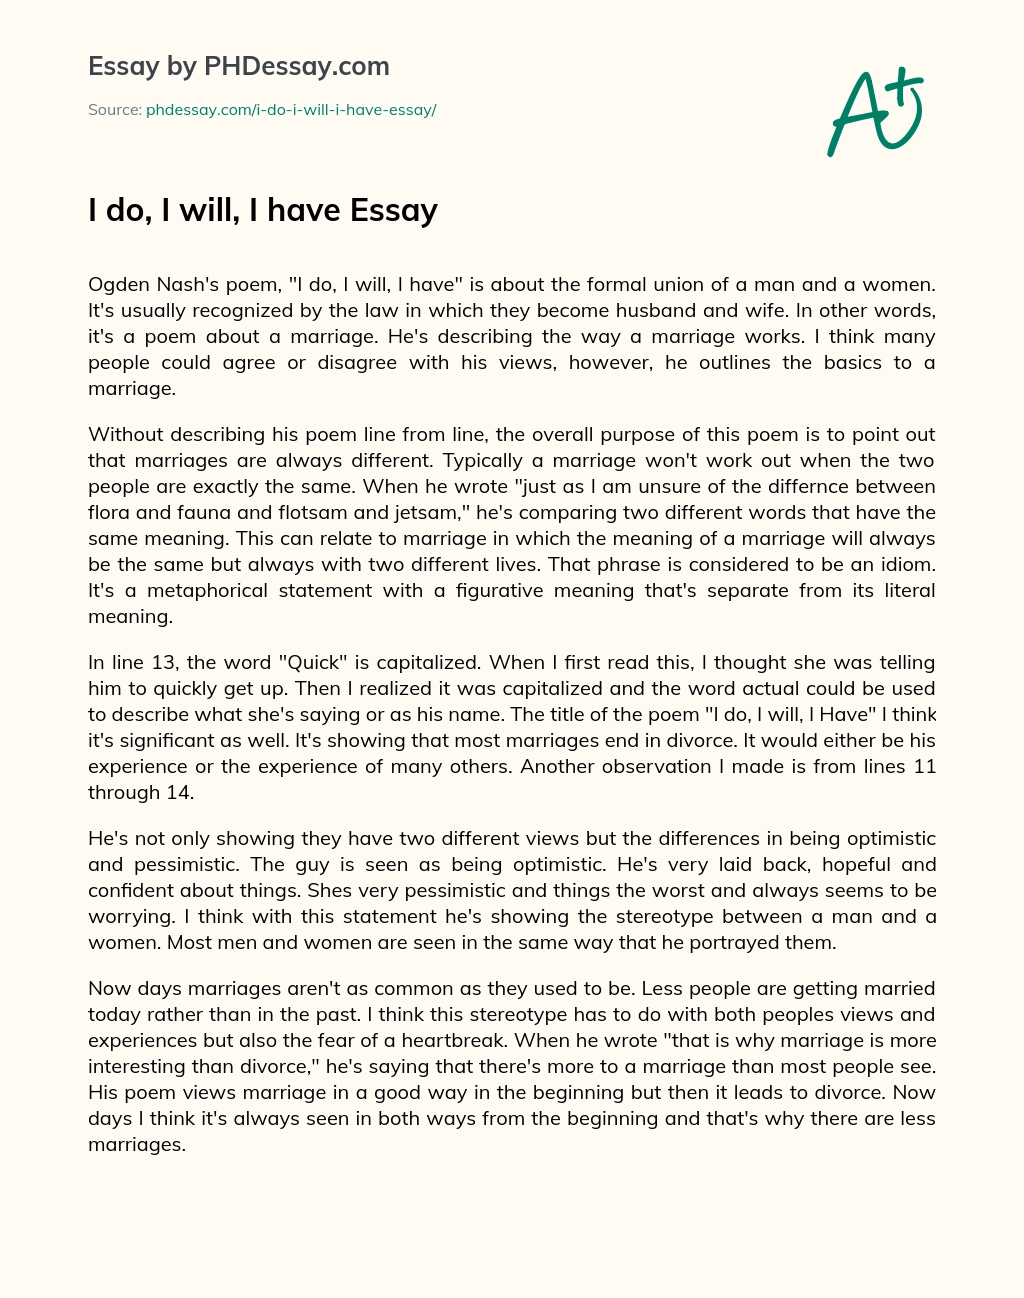 I do, I will, I have Essay essay